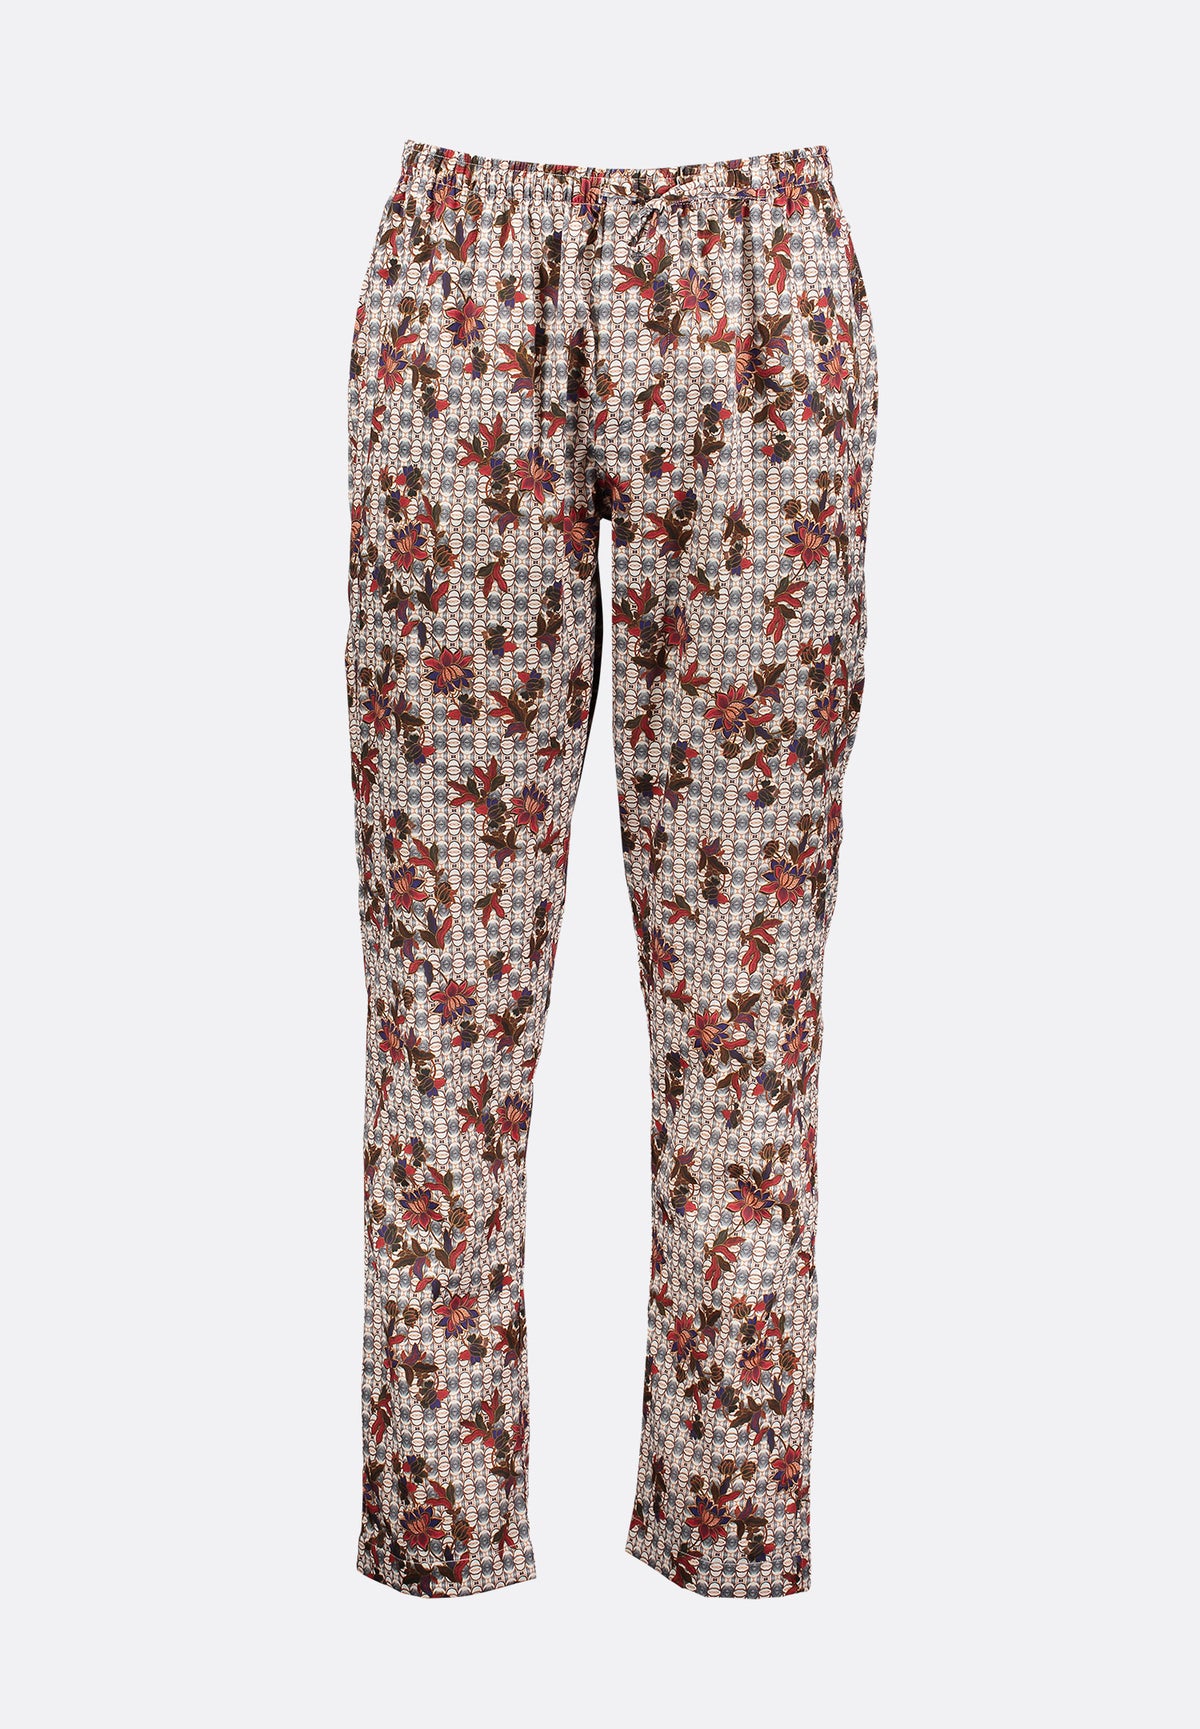 Cotton Sateen Print | Pants Long - multicolor